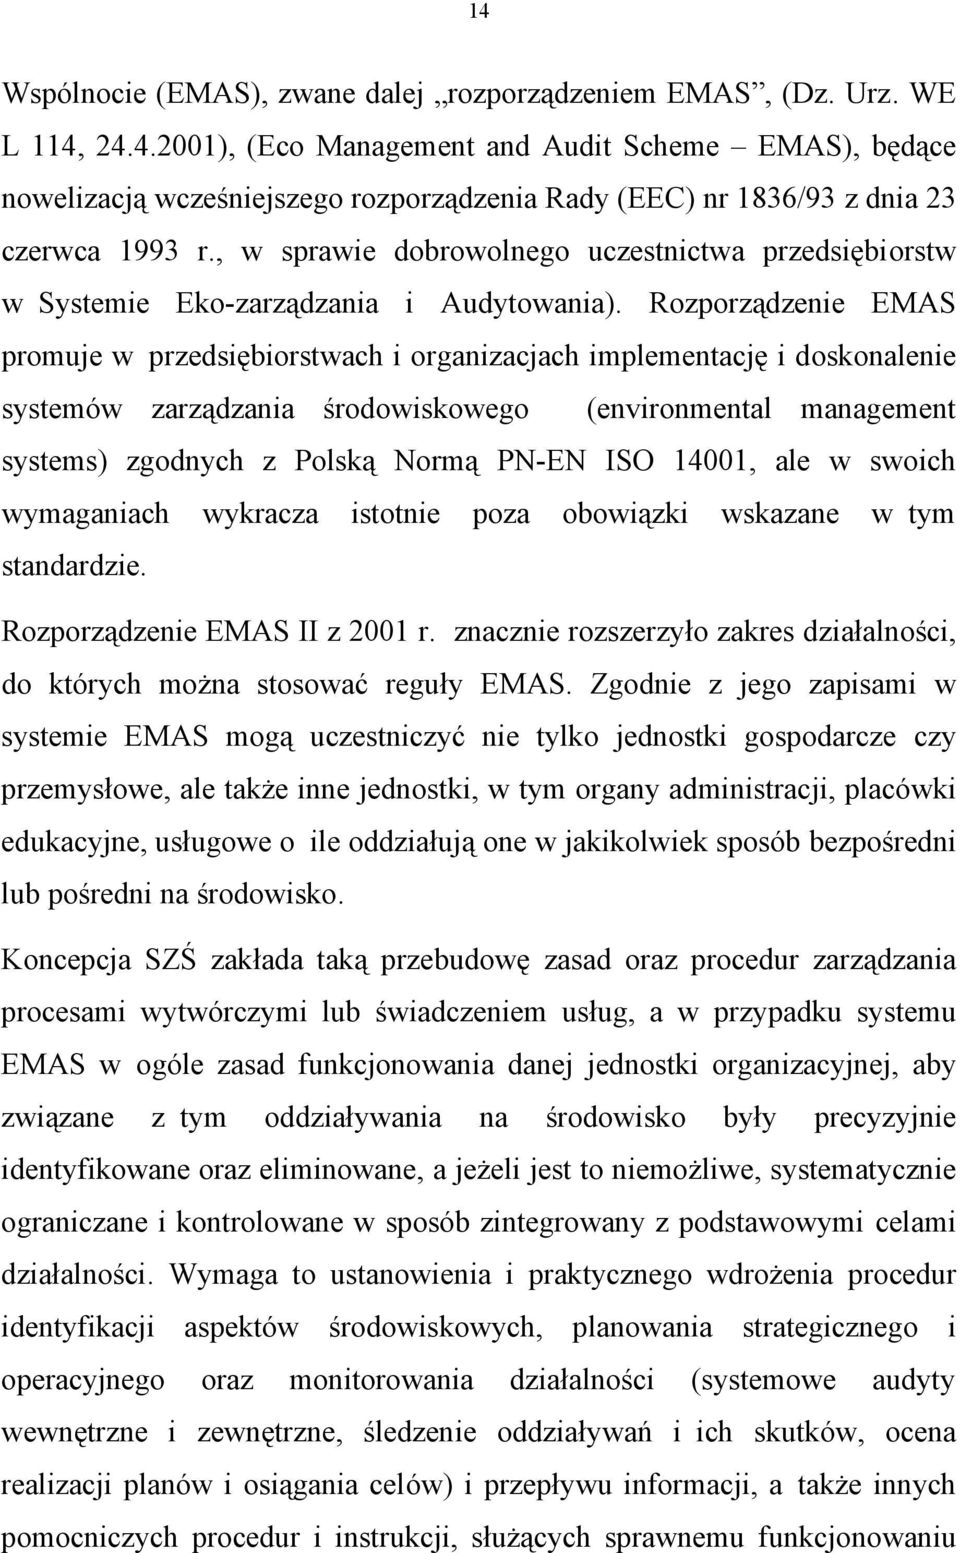 Rozporządzenie EMAS promuje w przedsiębiorstwach i organizacjach implementację i doskonalenie systemów zarządzania środowiskowego (environmental management systems) zgodnych z Polską Normą PN-EN ISO